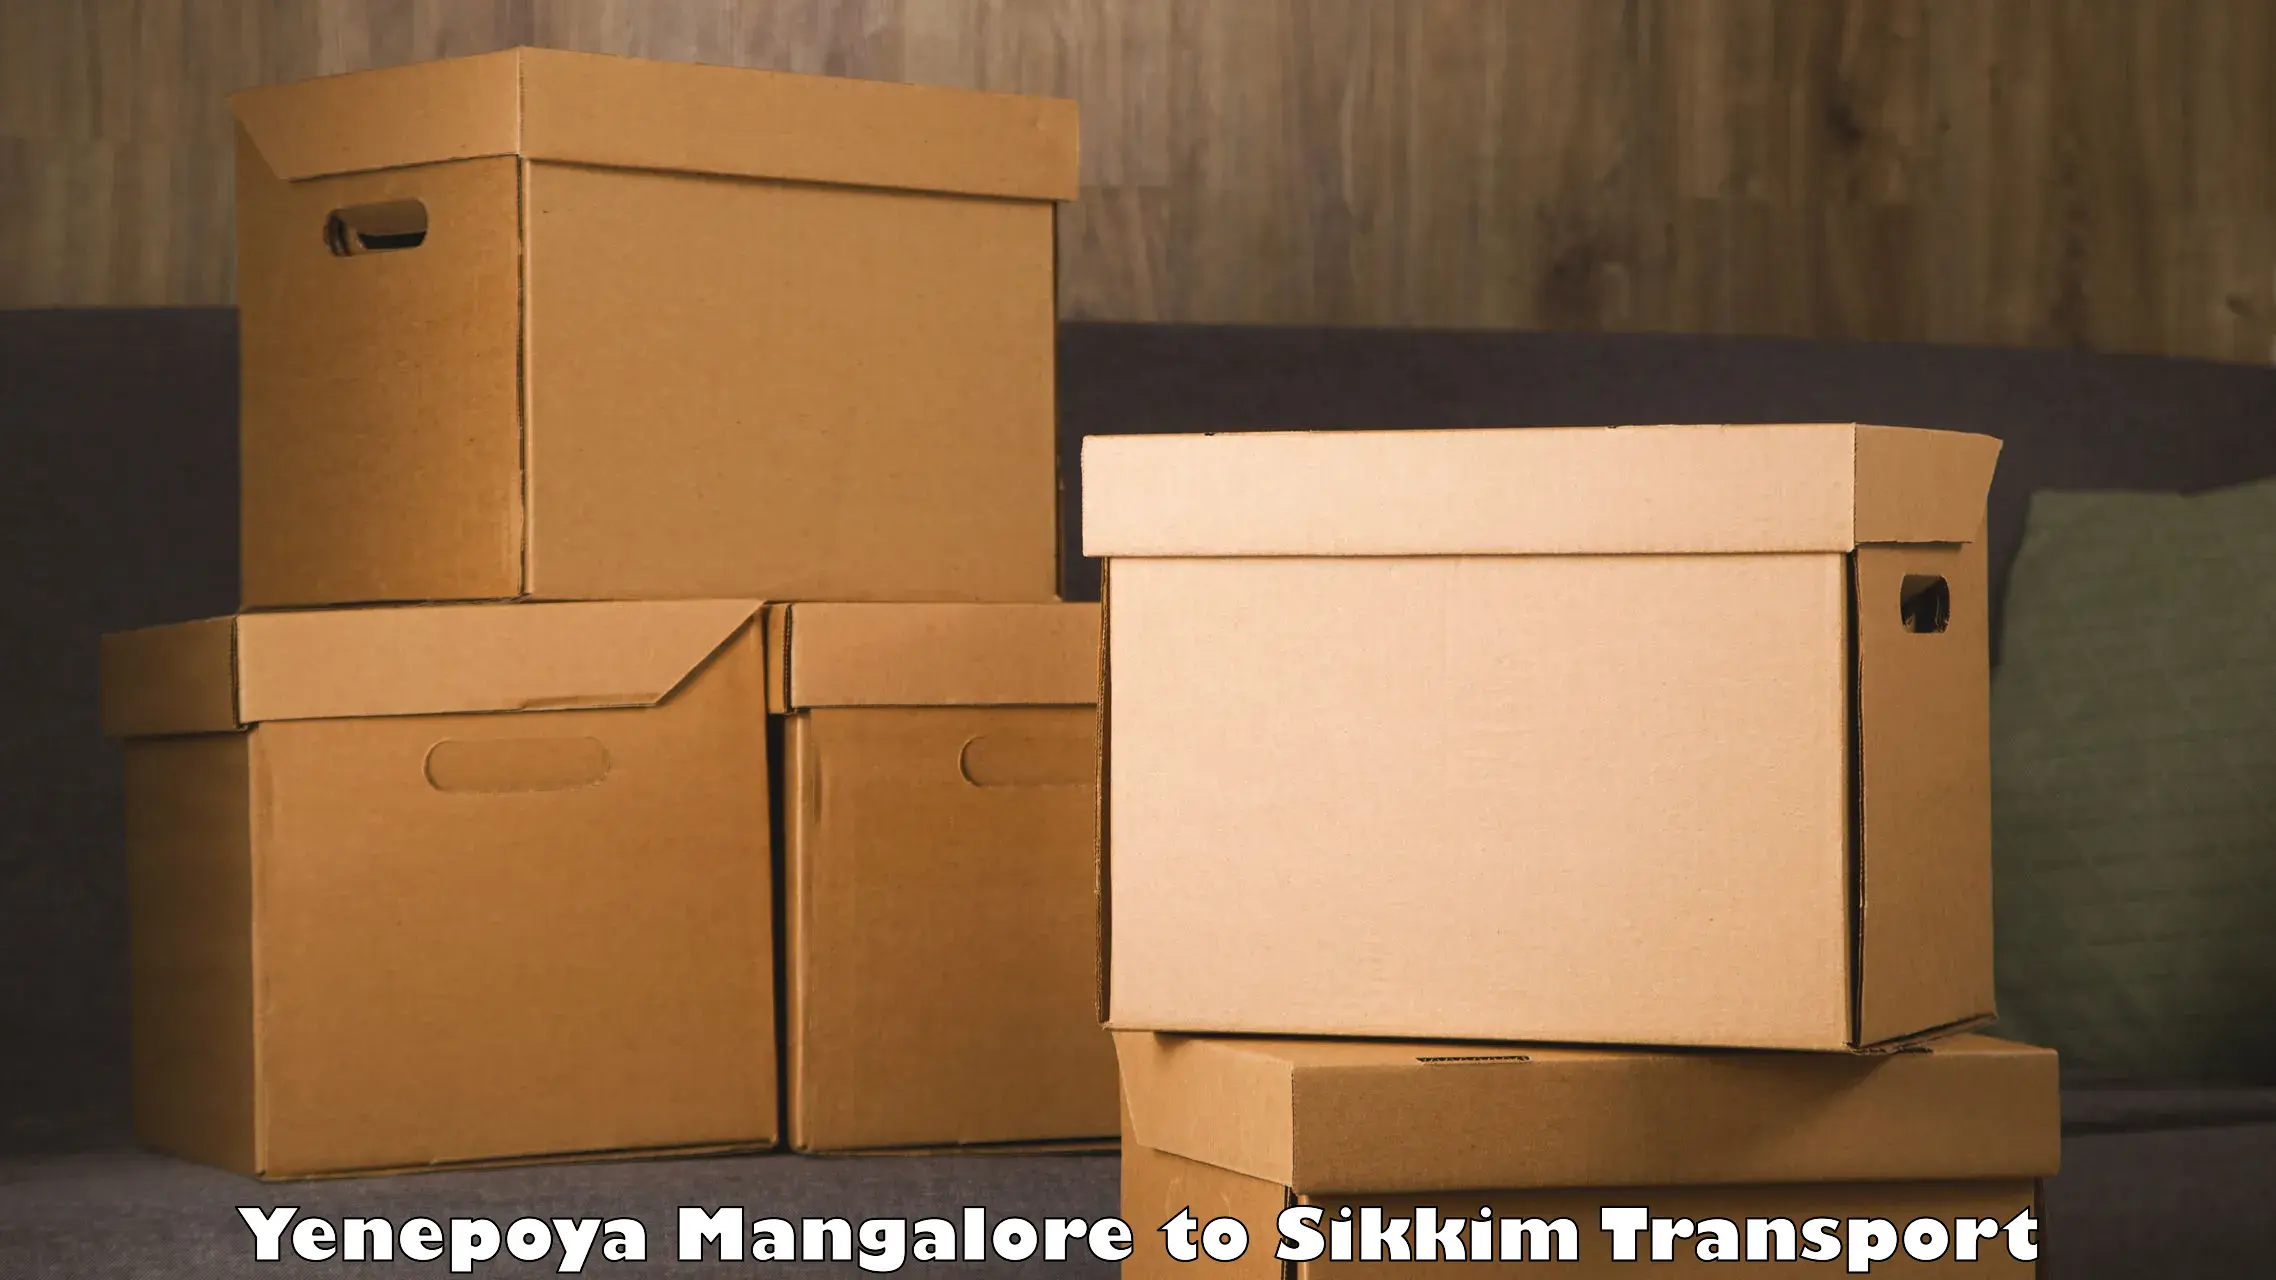 Truck transport companies in India Yenepoya Mangalore to Geyzing